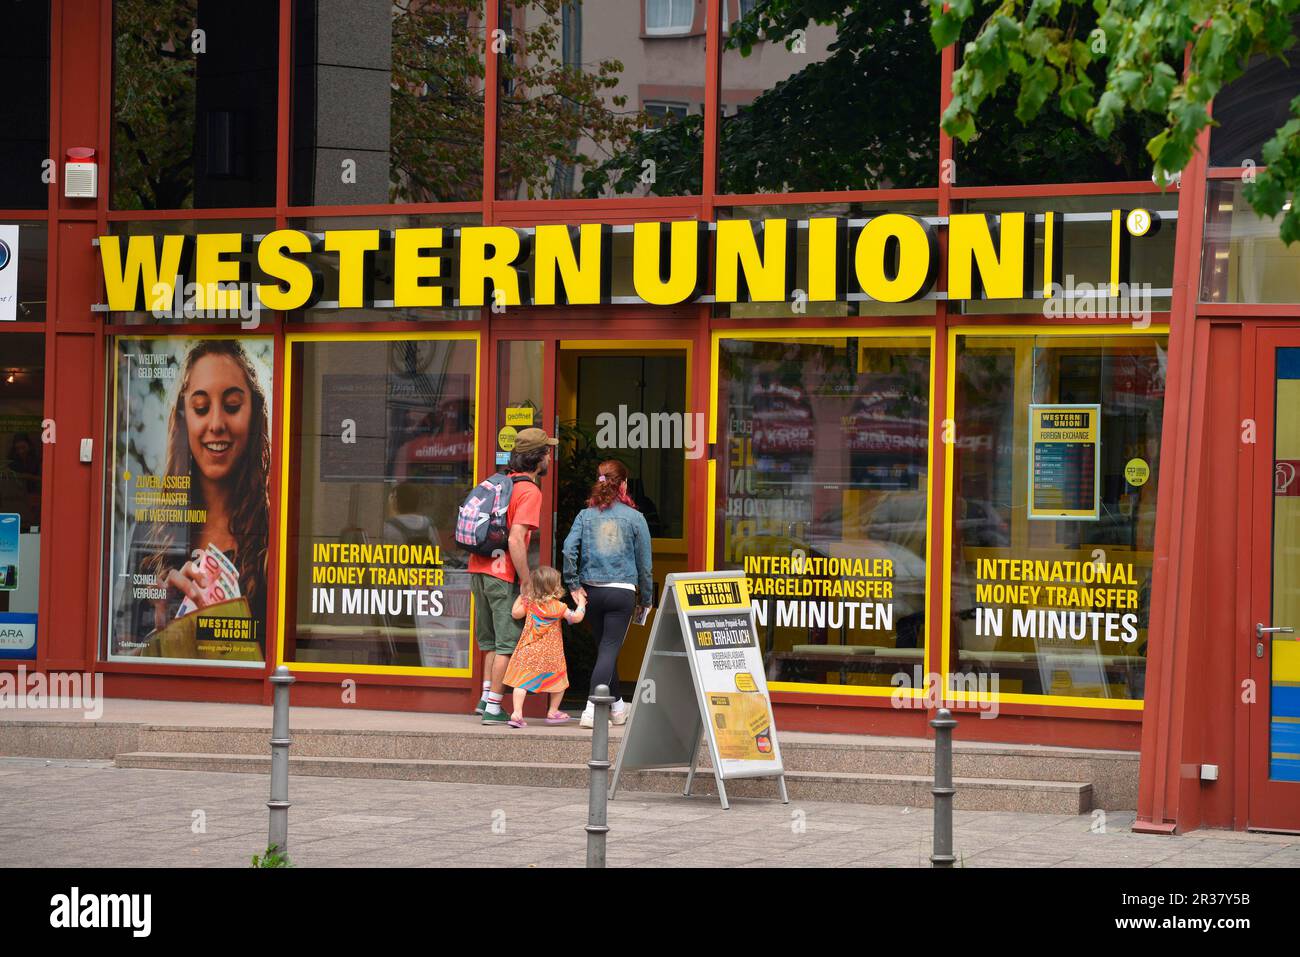 Western Union - Downtown Brooklyn